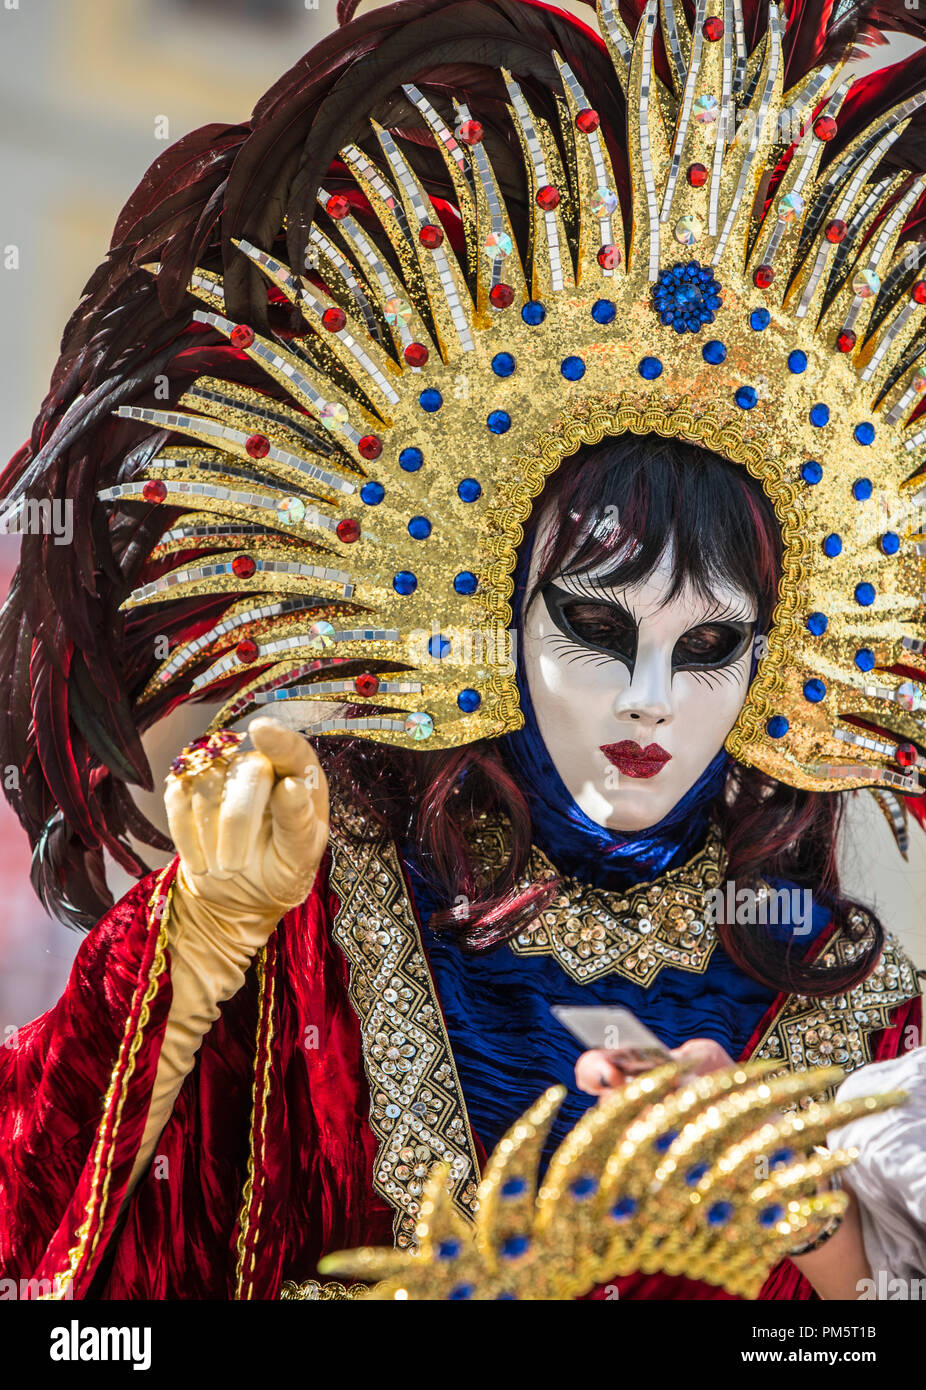 Une femme masquée dans un costume carnaval vénitien traditionnel Banque D'Images